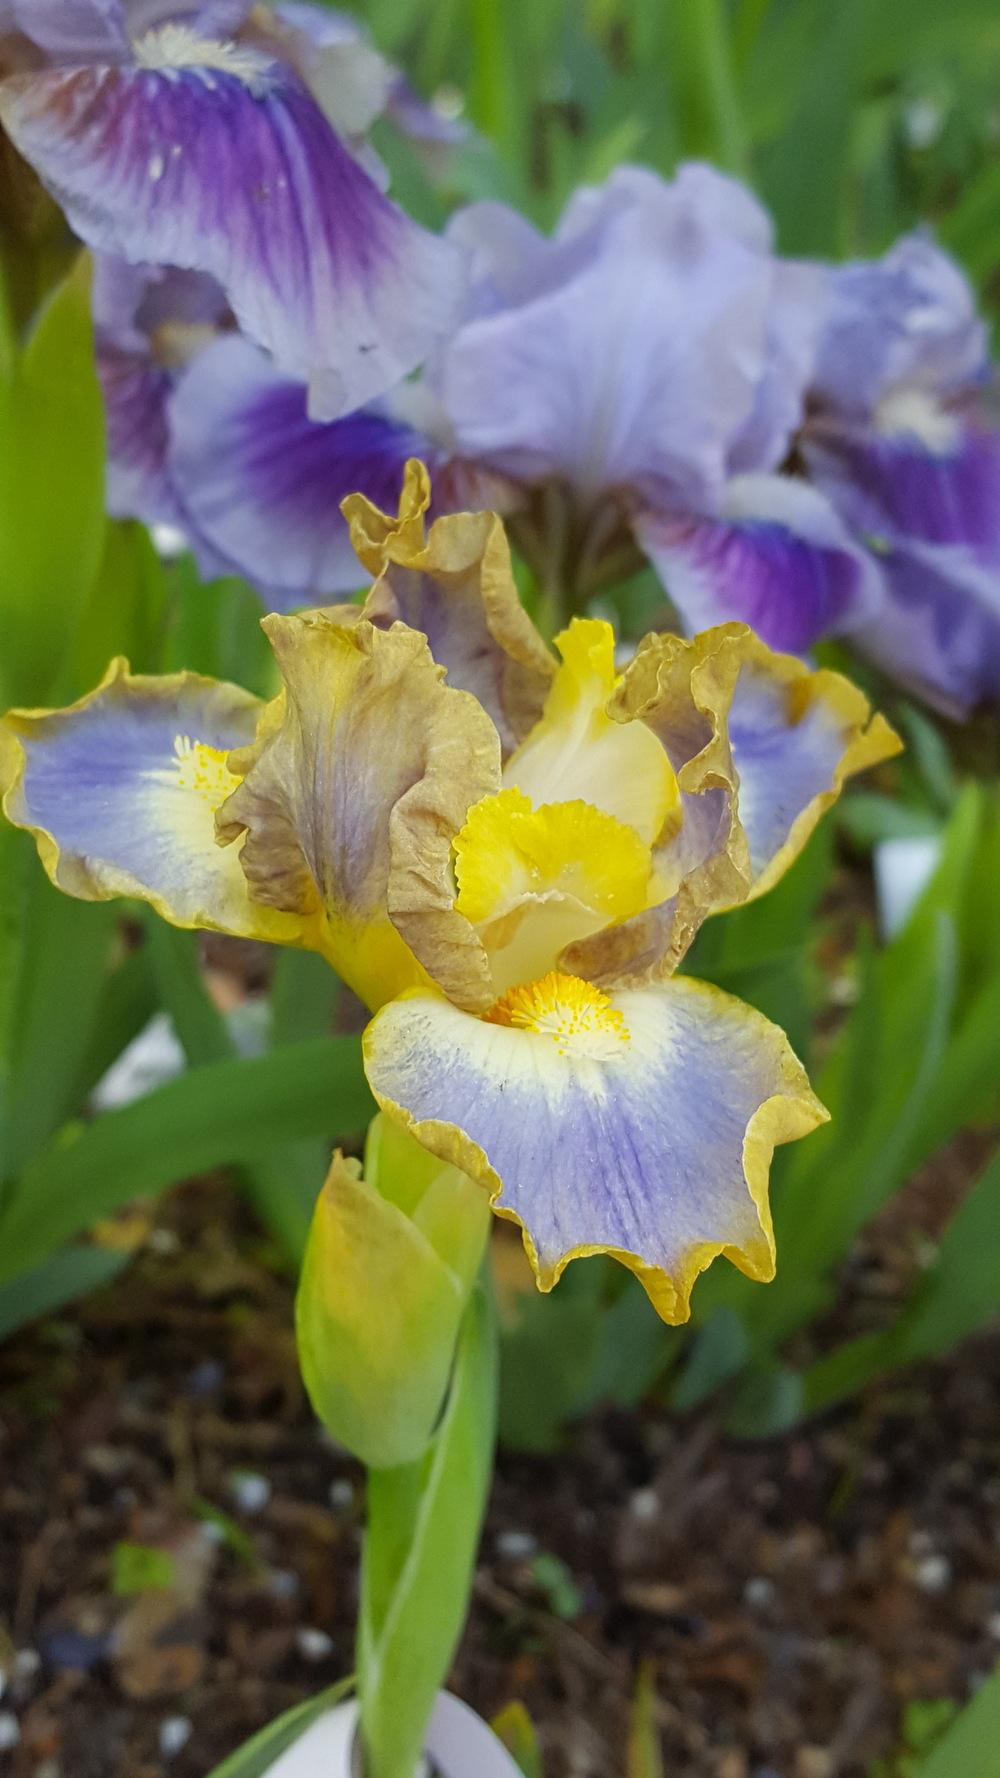 Photo of Standard Dwarf Bearded Iris (Iris 'My Cher') uploaded by Dachsylady86